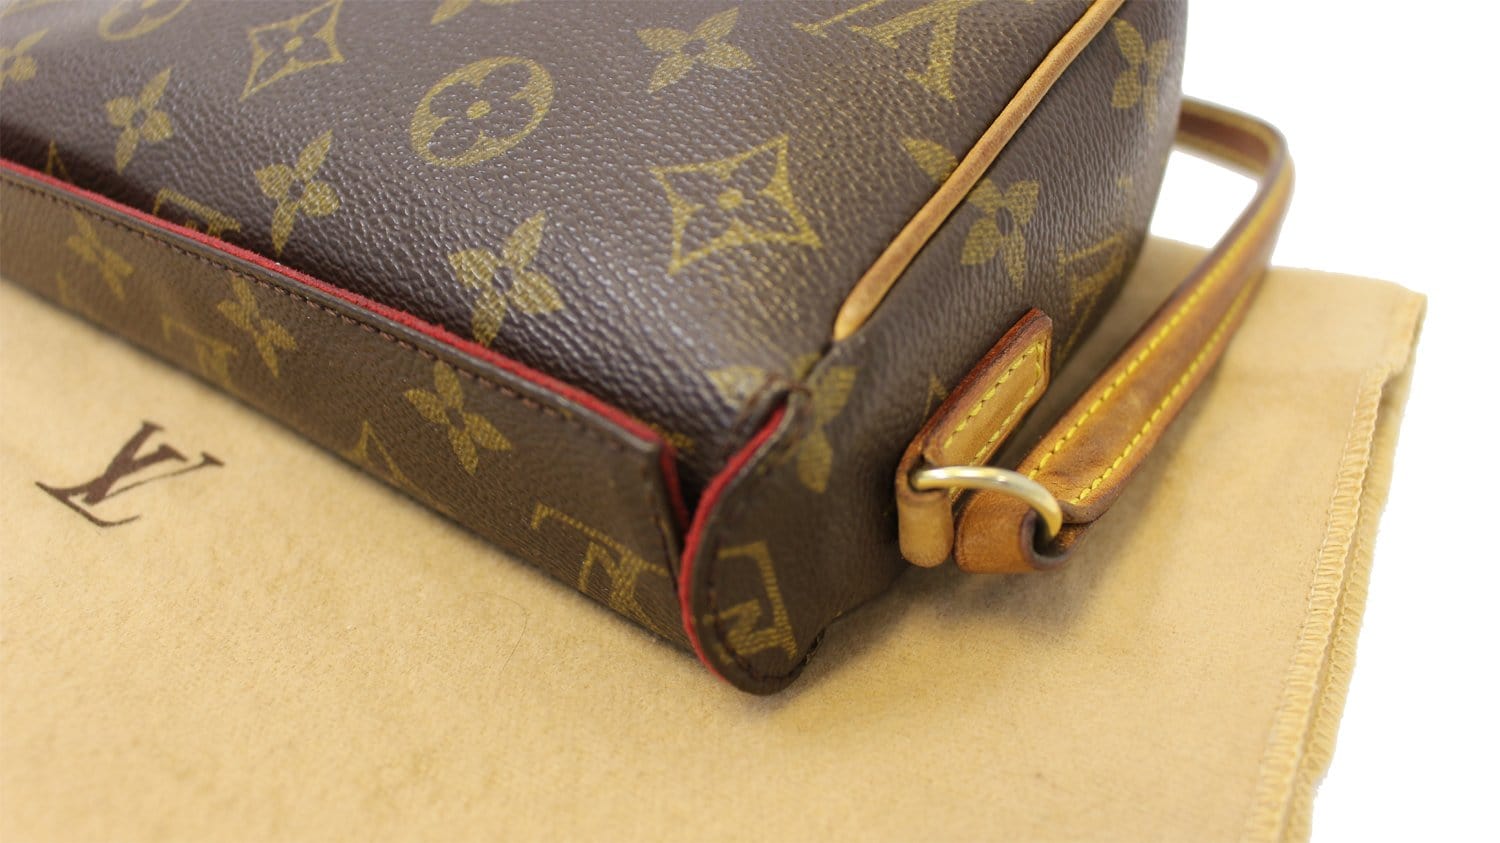 Authenticated used Louis Vuitton Monogram Recital M51900 Handbag Bag 0081 Louis Vuitton, Adult Unisex, Size: (HxWxD): 13cm x 20cm x 6.5cm / 5.11'' x